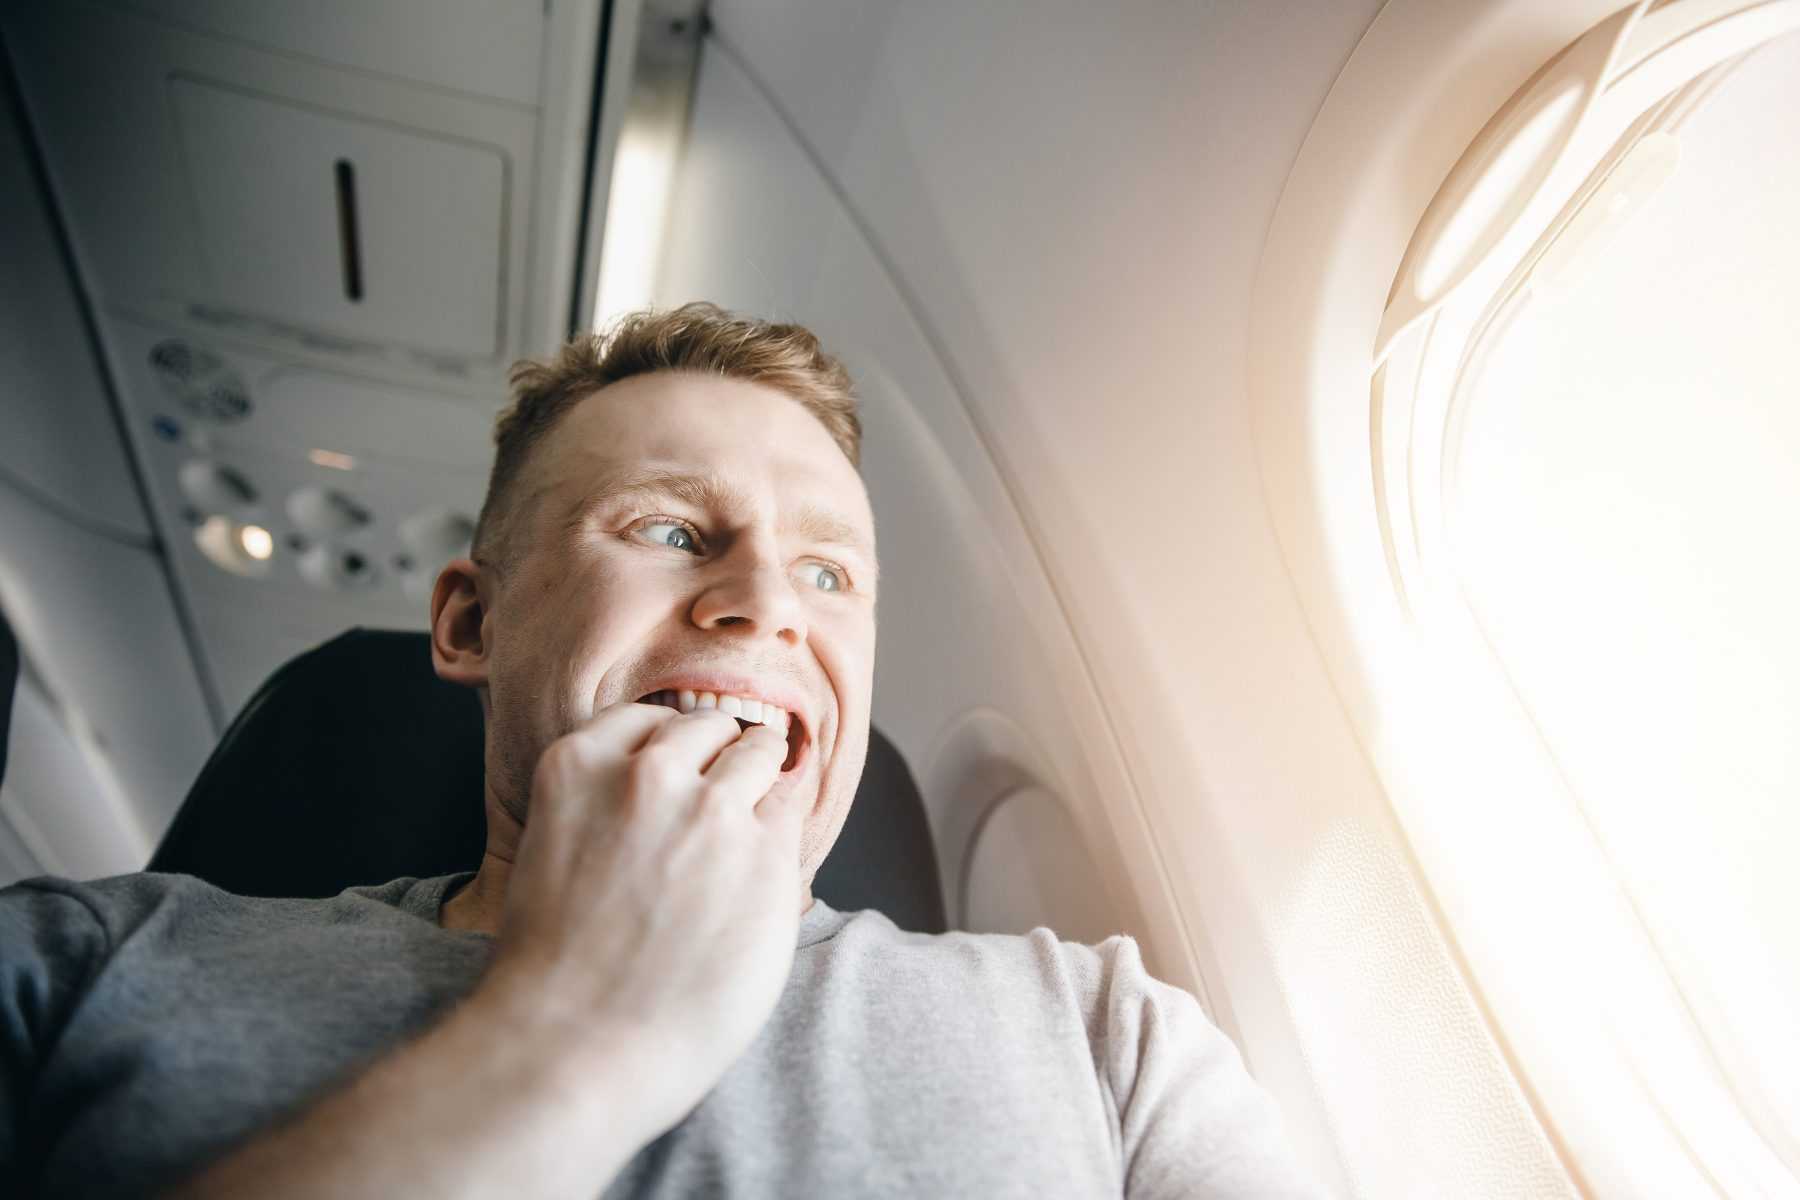 Аэрофобия или что делать, если боишься летать на самолете